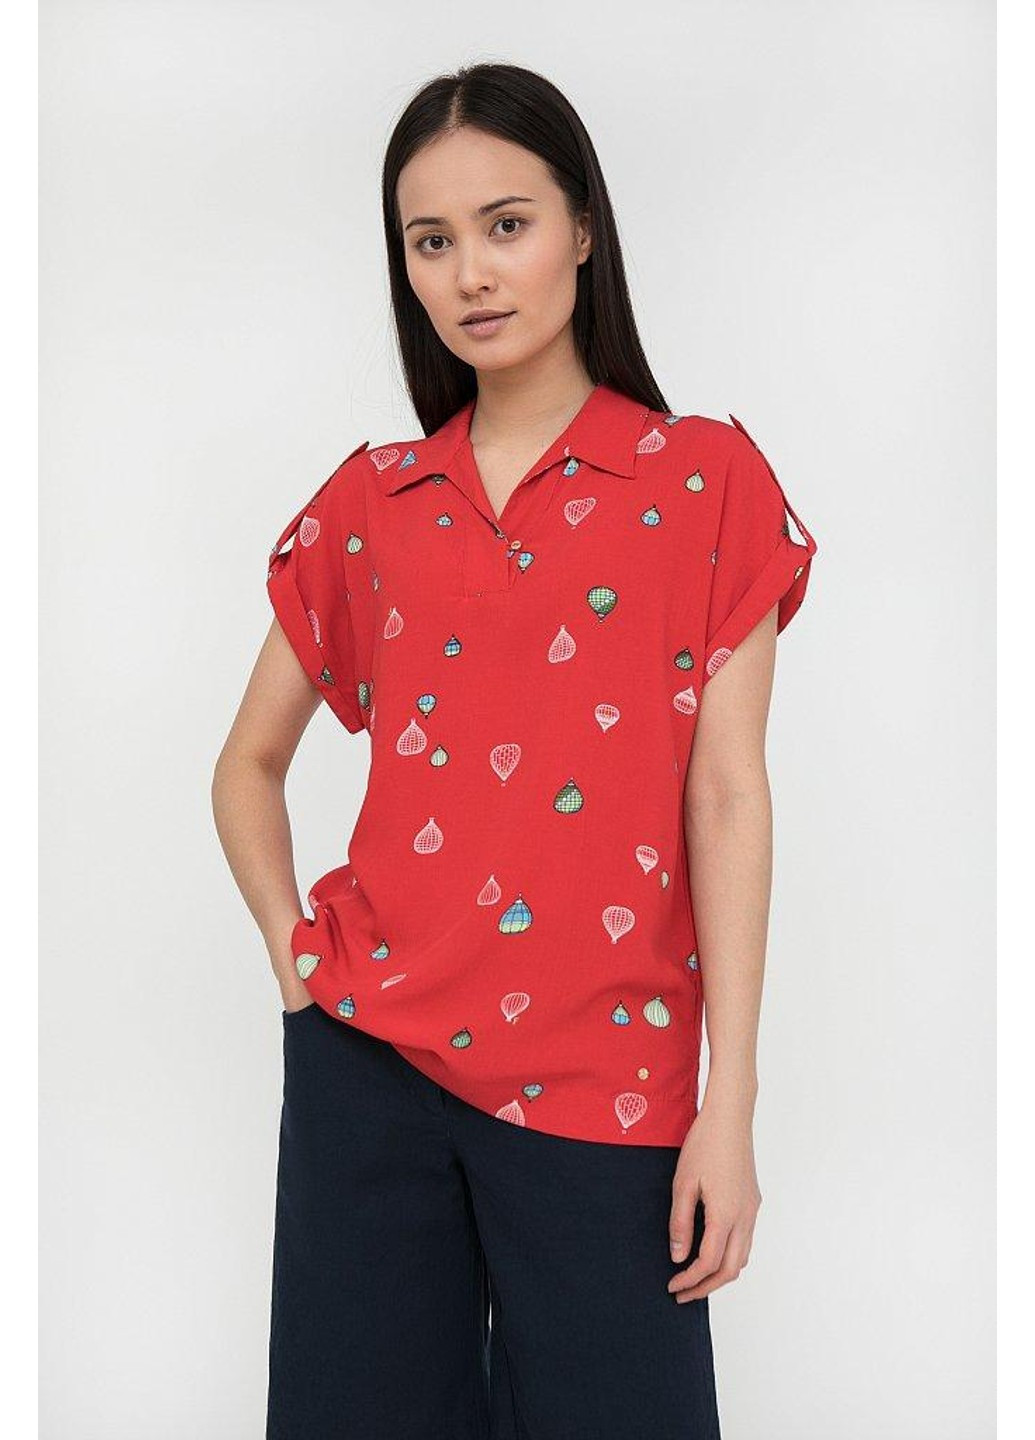 Червона літня блуза s20-14094-341 Finn Flare